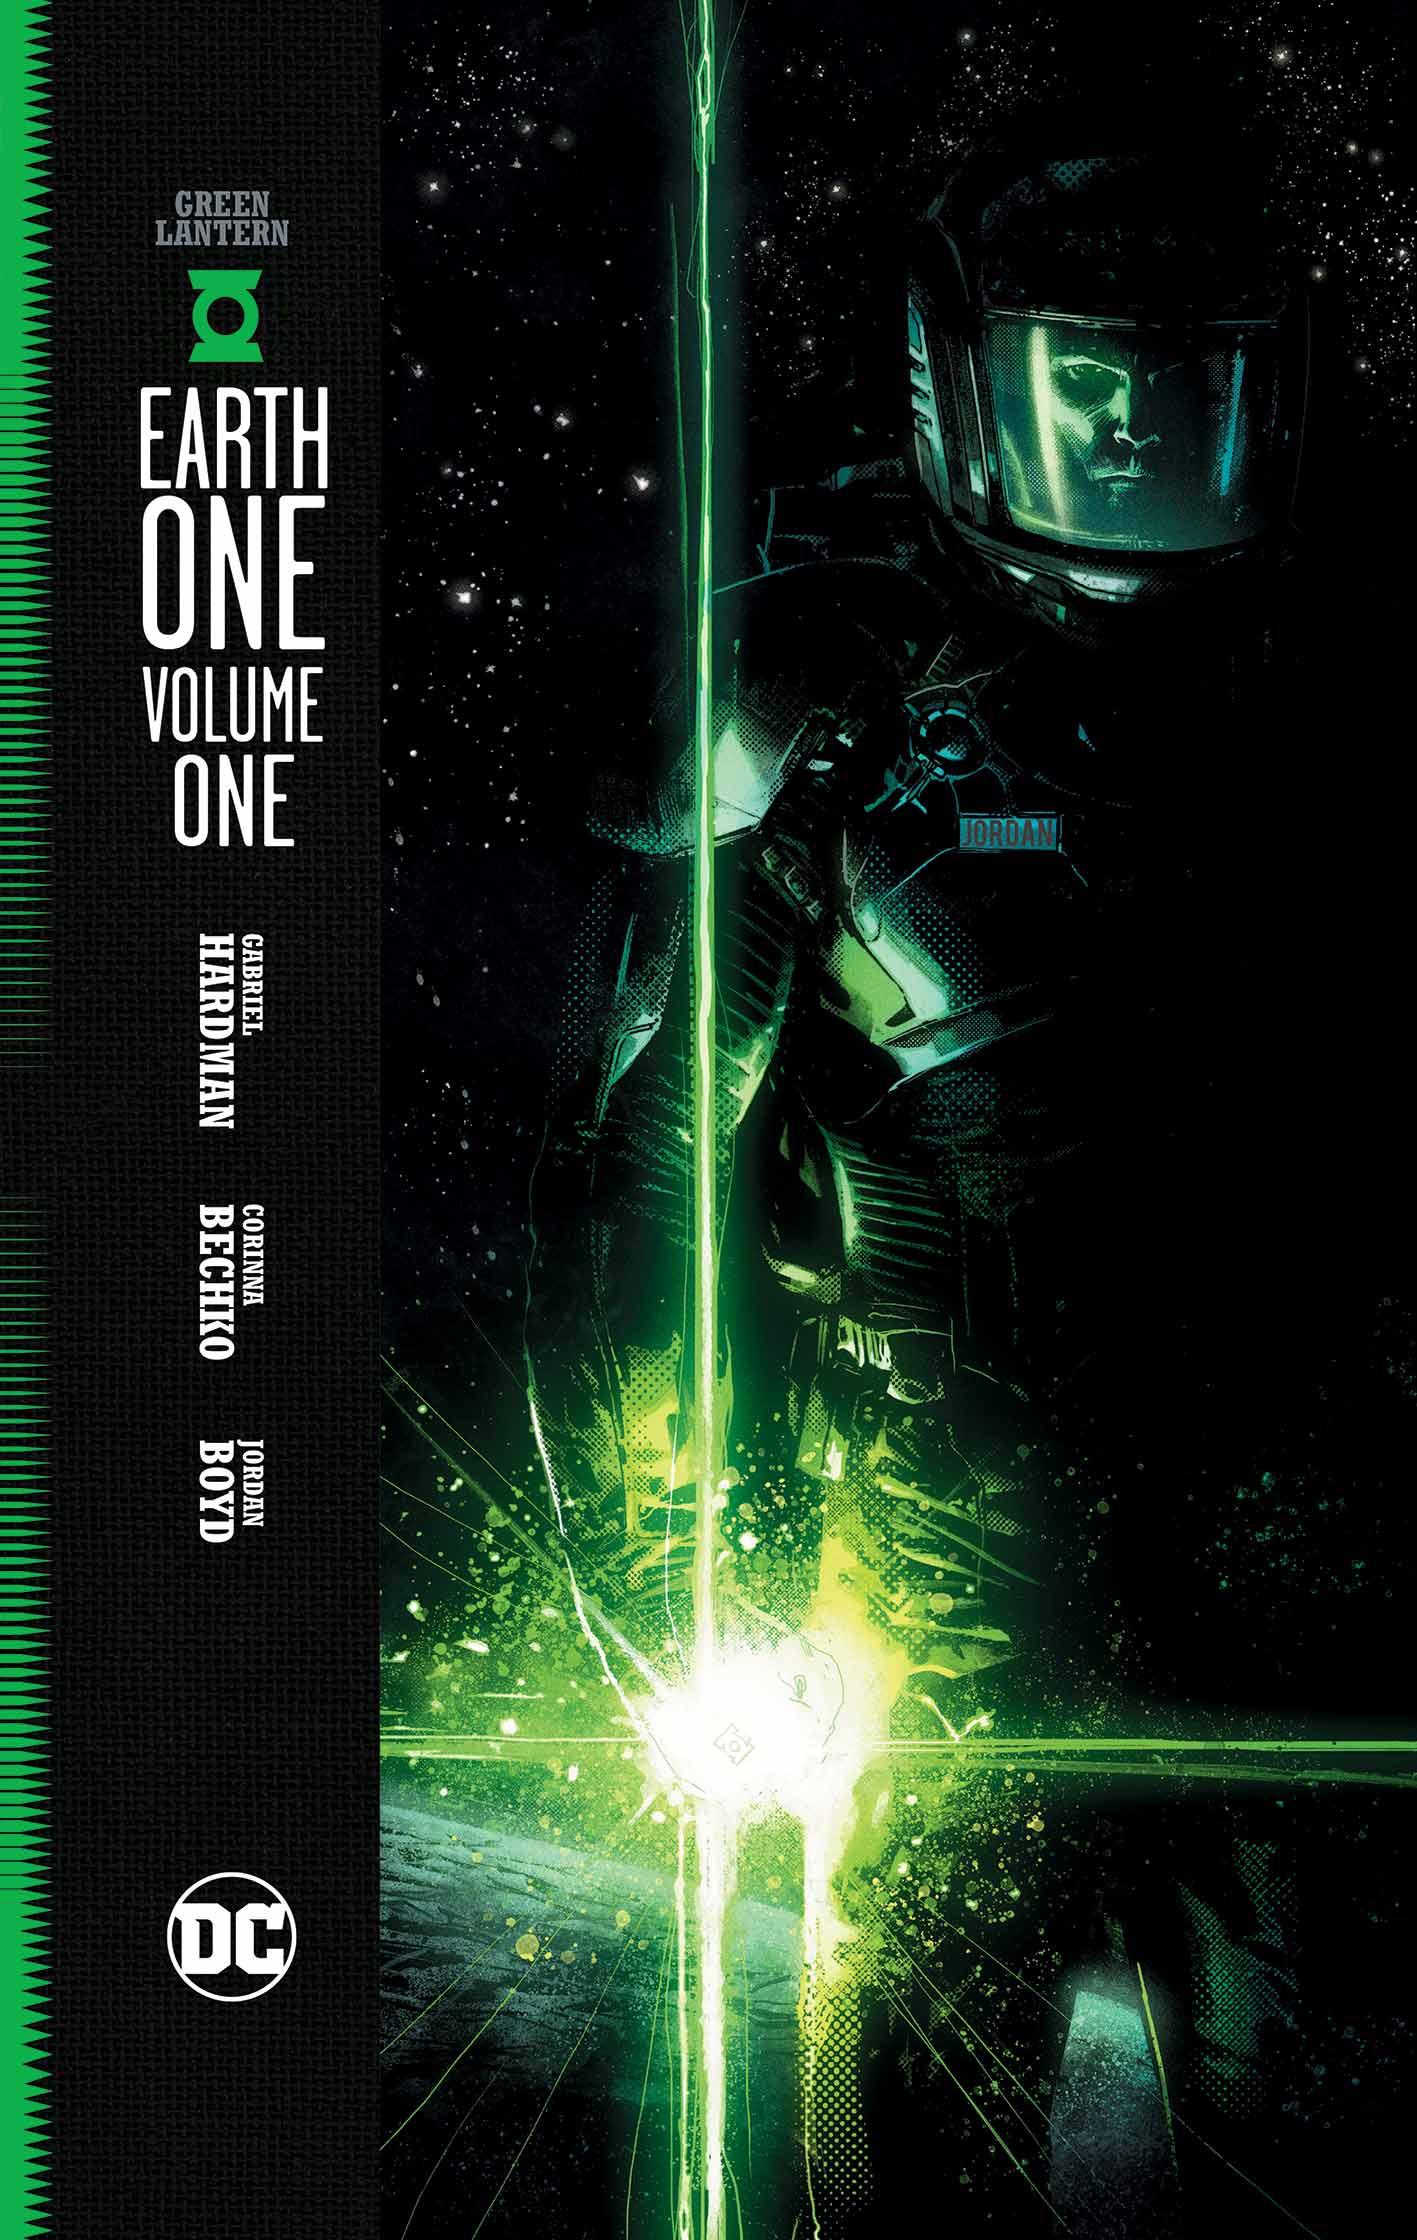 Green Lantern: Earth One Vol. 1 #1